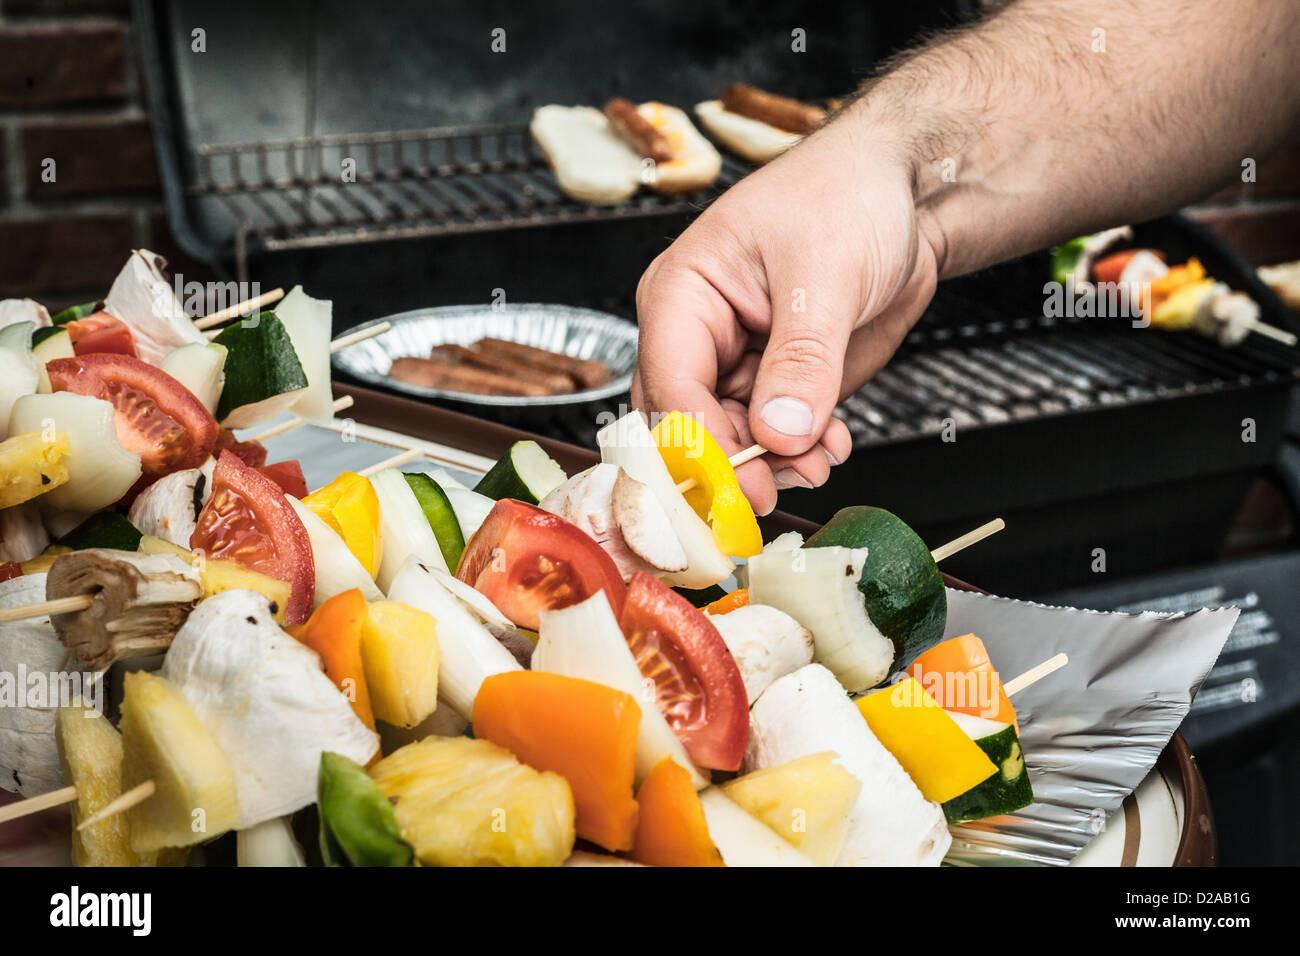 Man grilling vegetable skewers Stock Photo